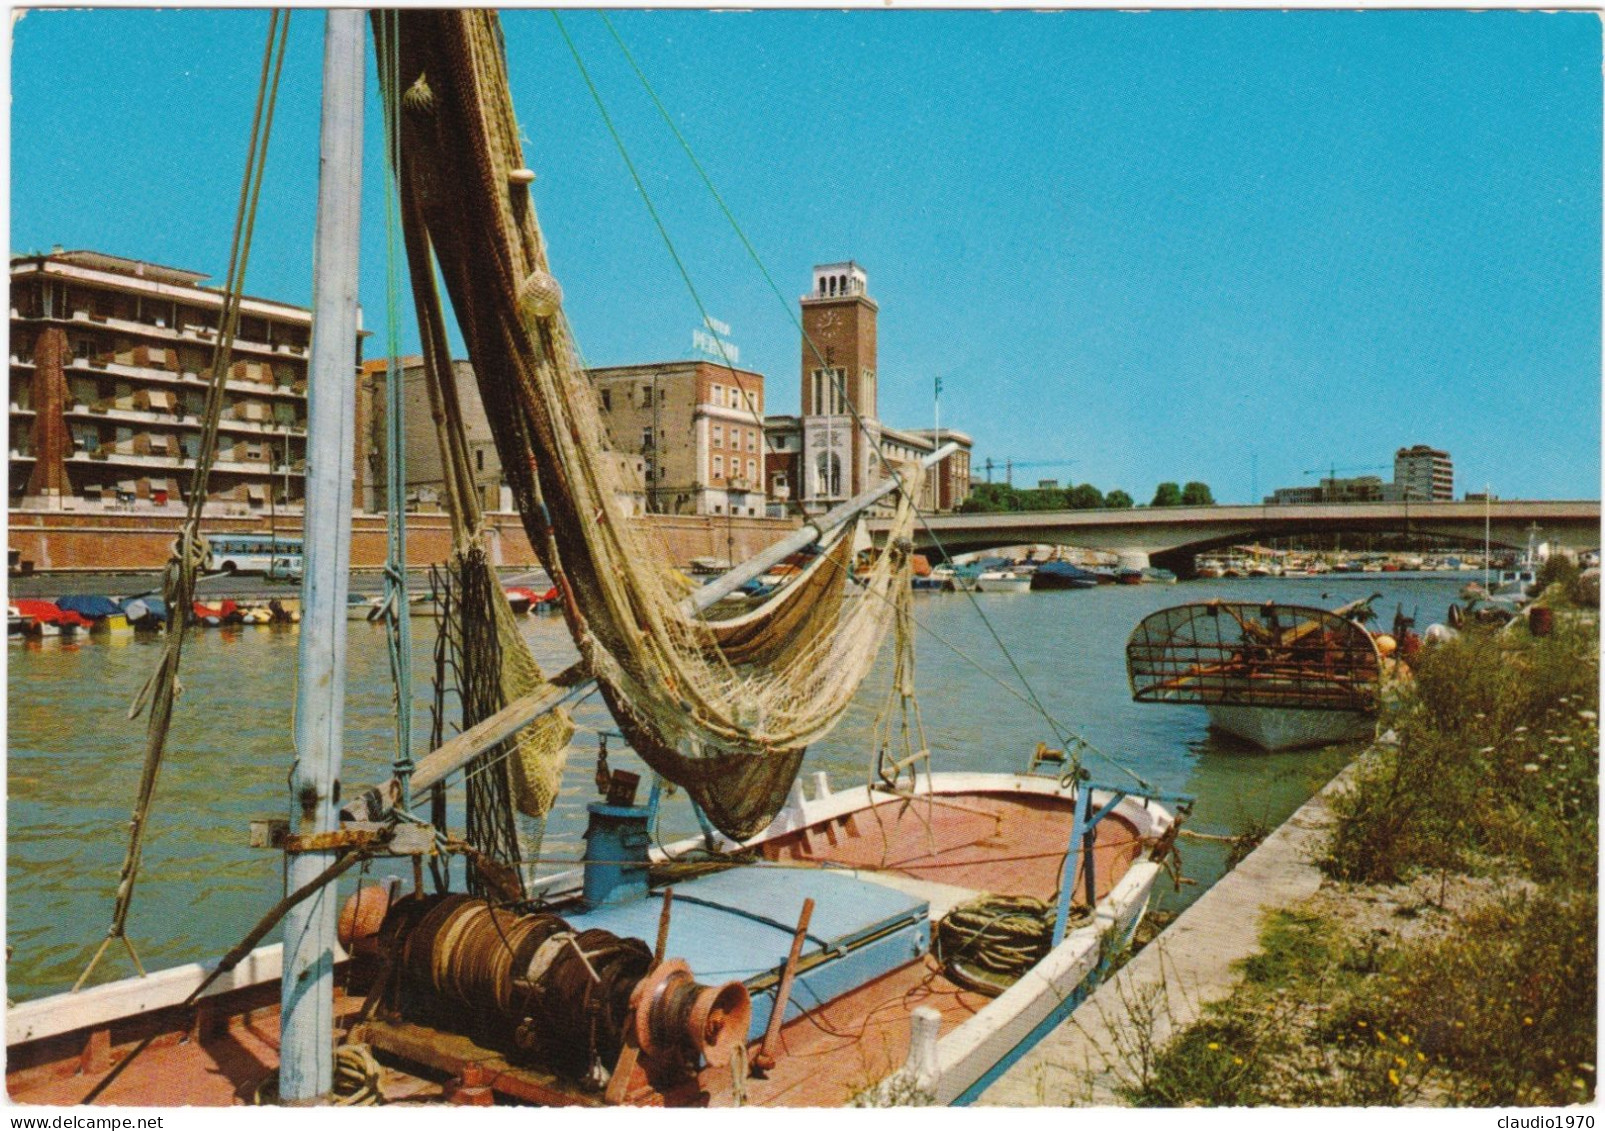 PESCARA - CARTOLINA - PORTO CANALE - ANNULLO DI MANFREDONIA (FG) -1978 - Pescara